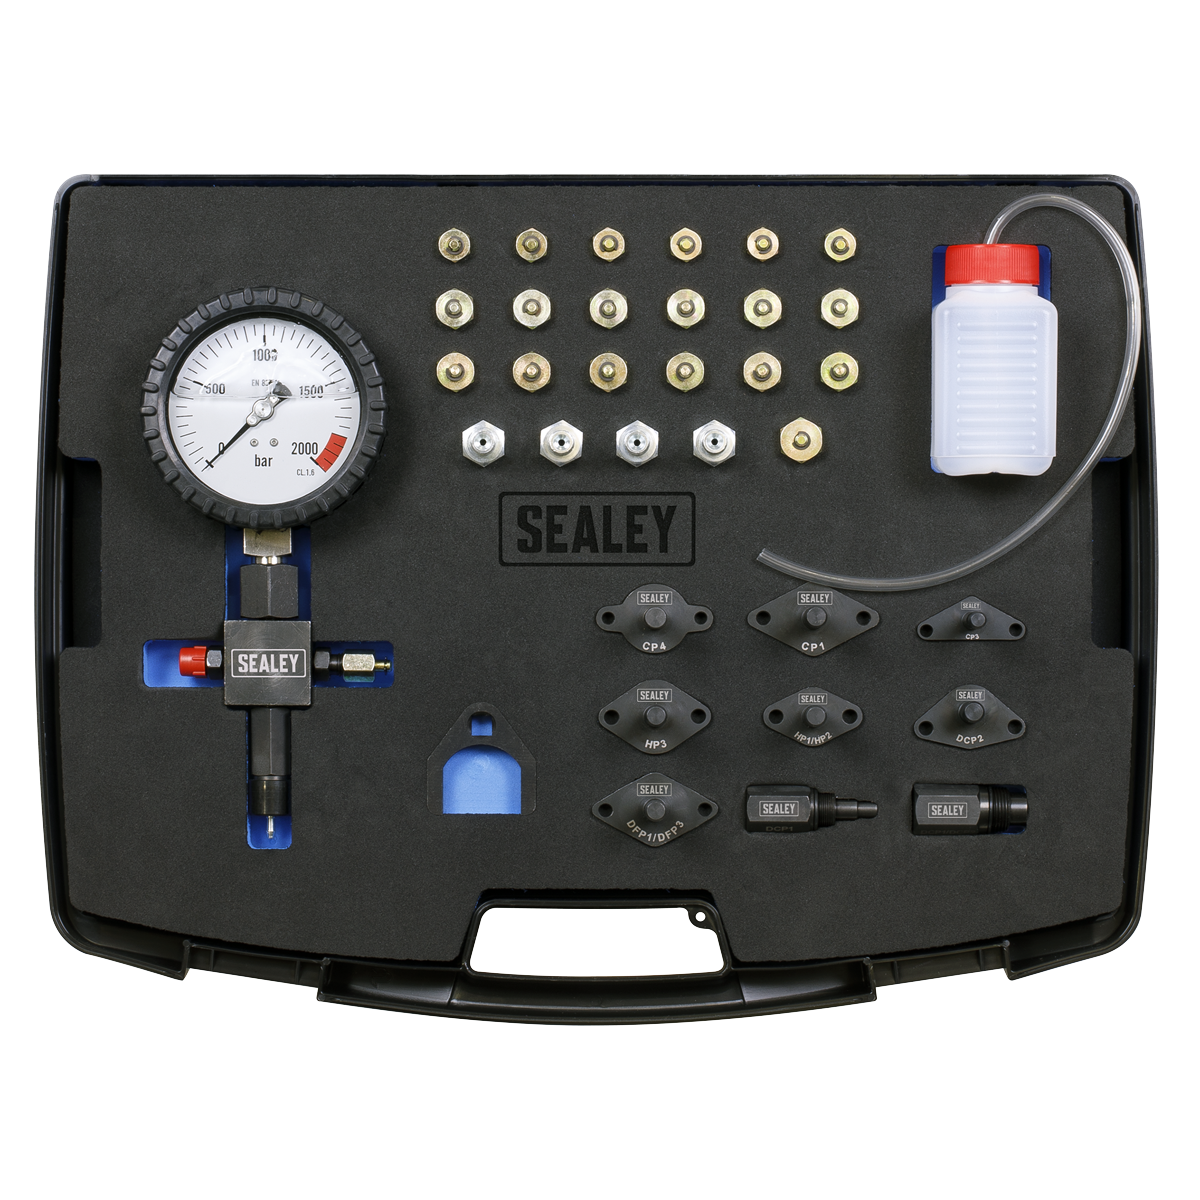 Sealey Diesel High Pressure Pump Test Kit VS216